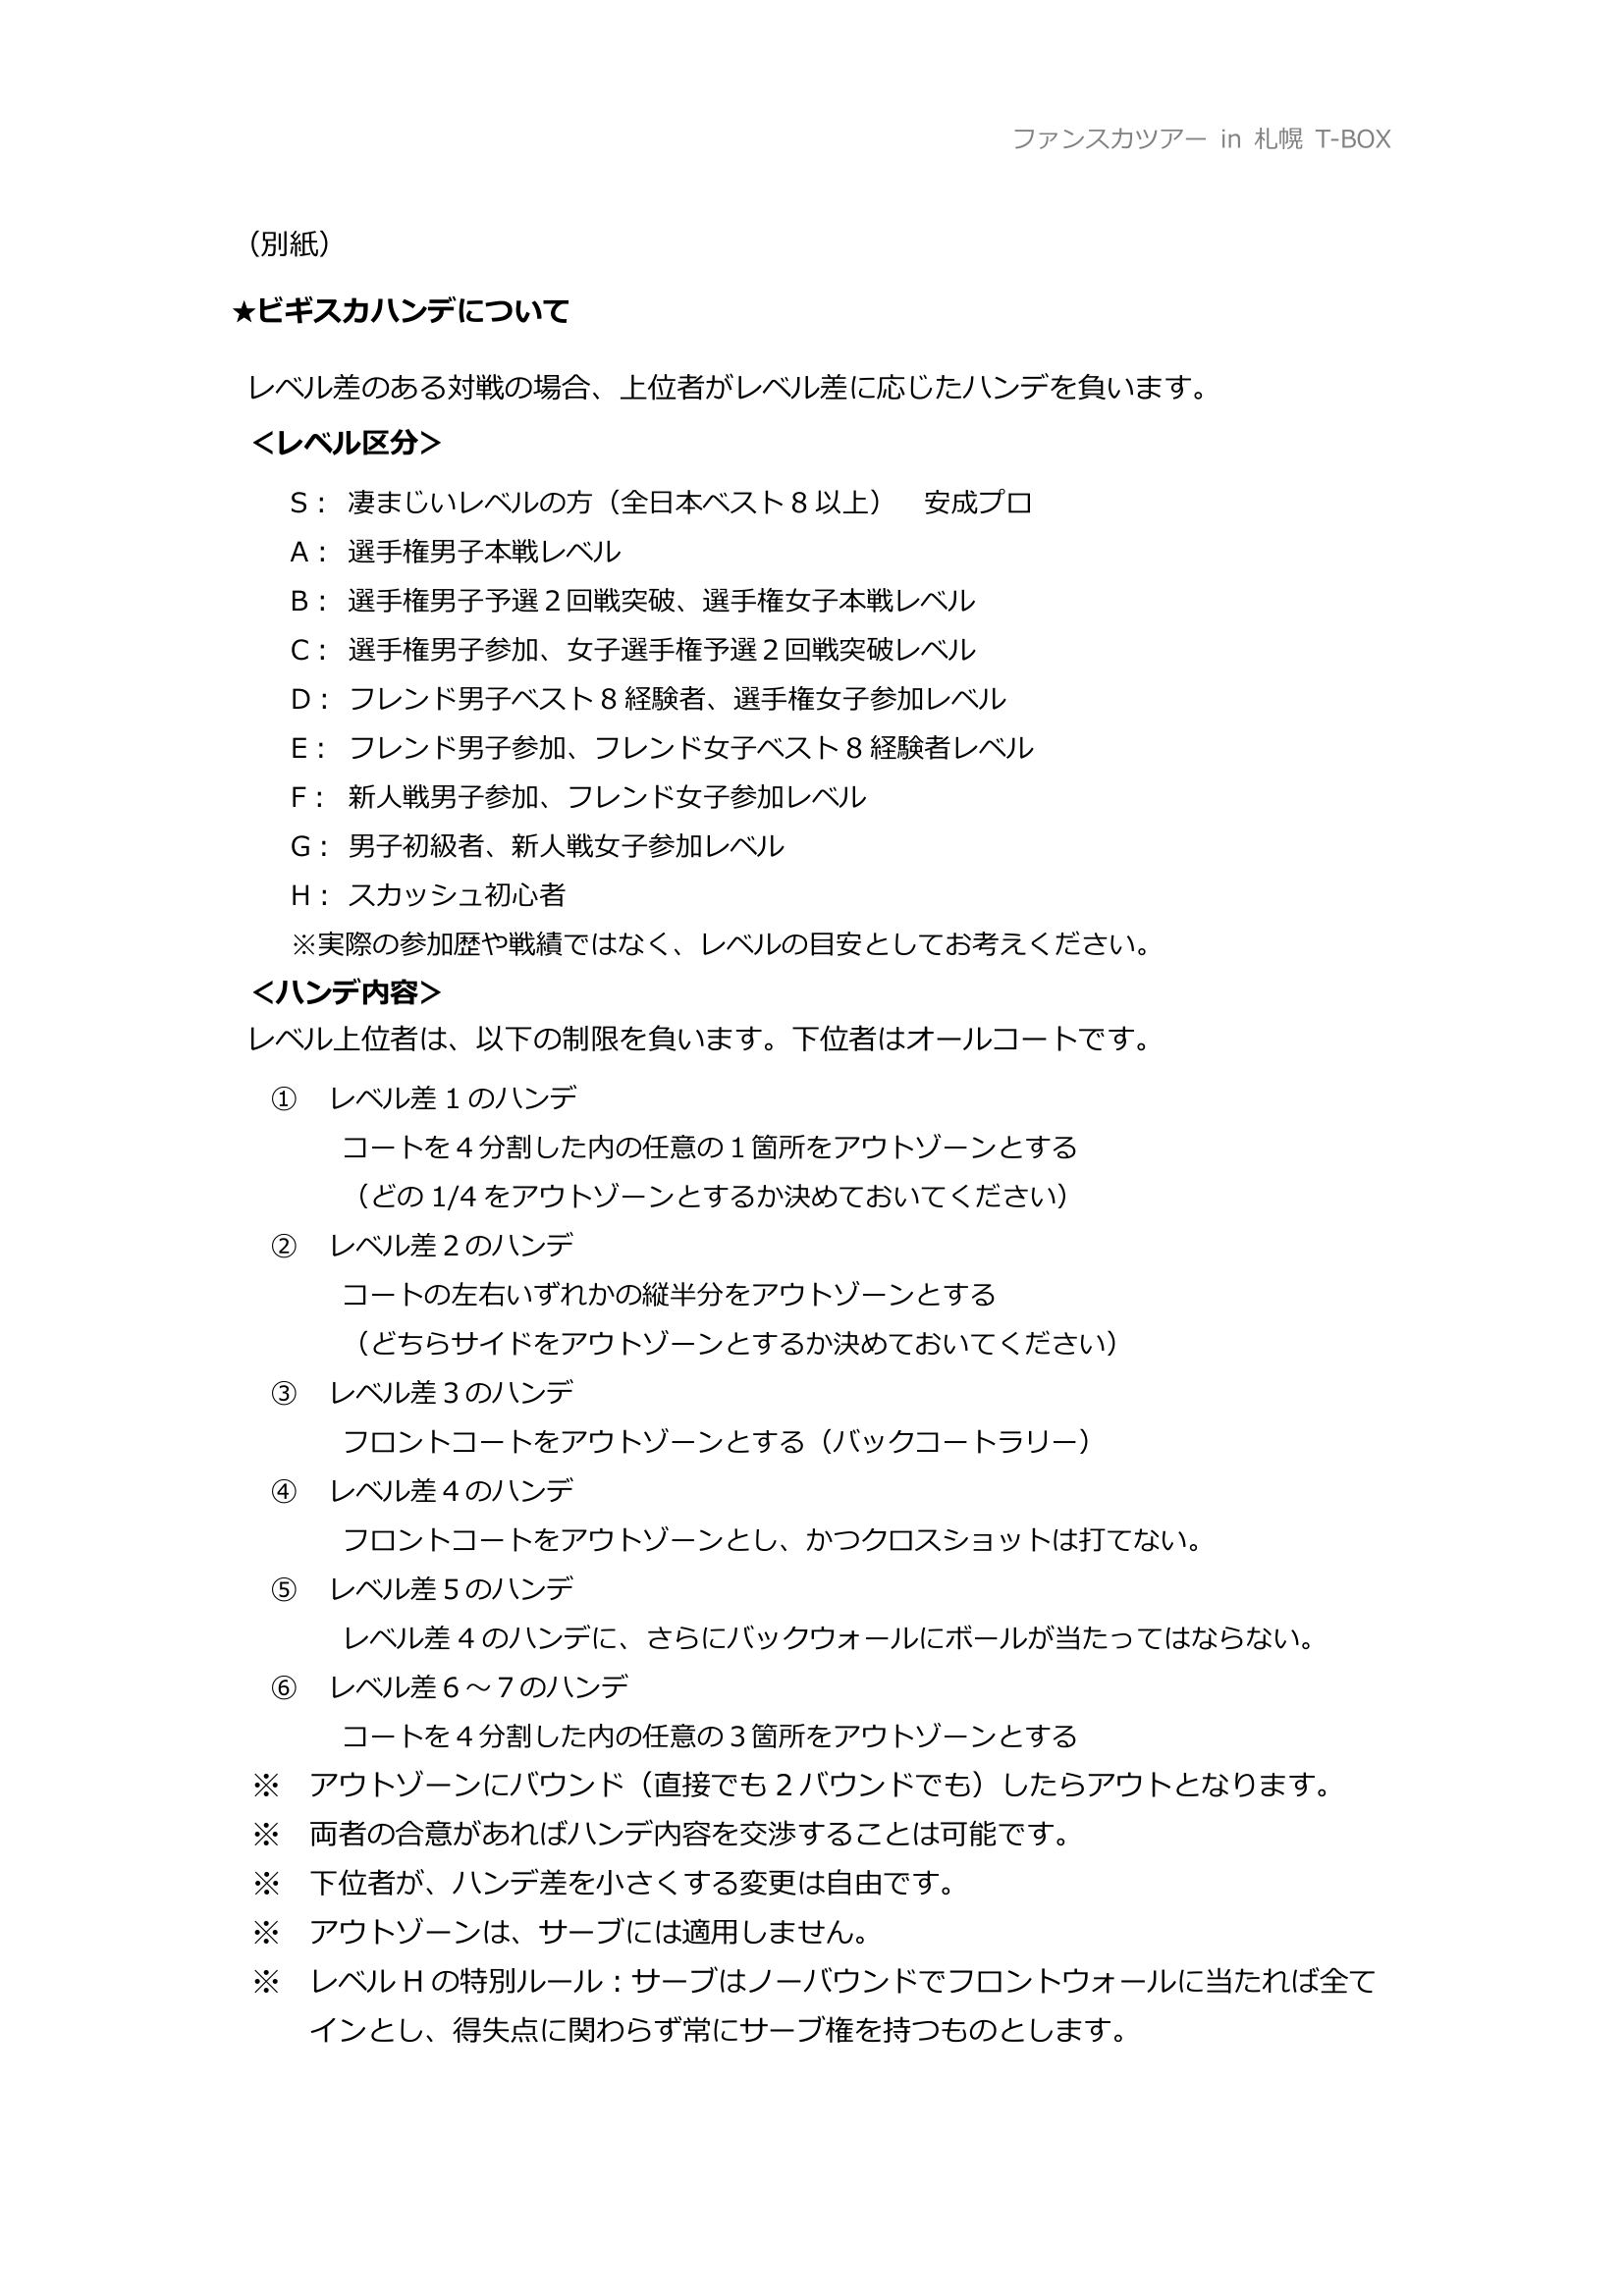 ファンスカツアー with 安成翔太プロ in 札幌 T-BOX 募集要項